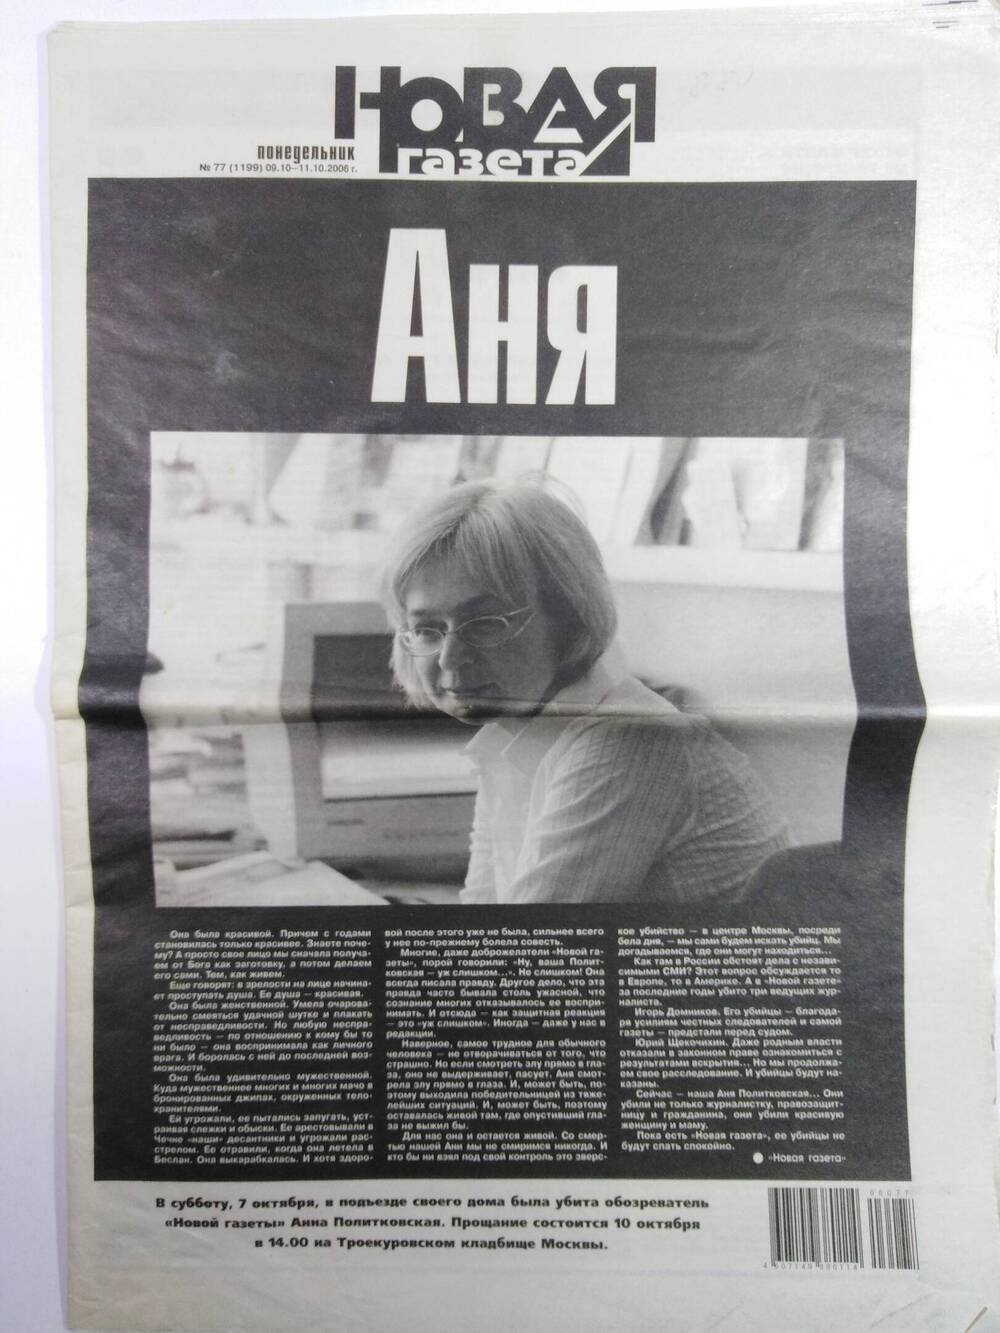 Газета «Новая газета» №77 (1199) от 09.10 -11.10. 2006 г. АНЯ, посвящённый памяти журналиста Анны Политковской.